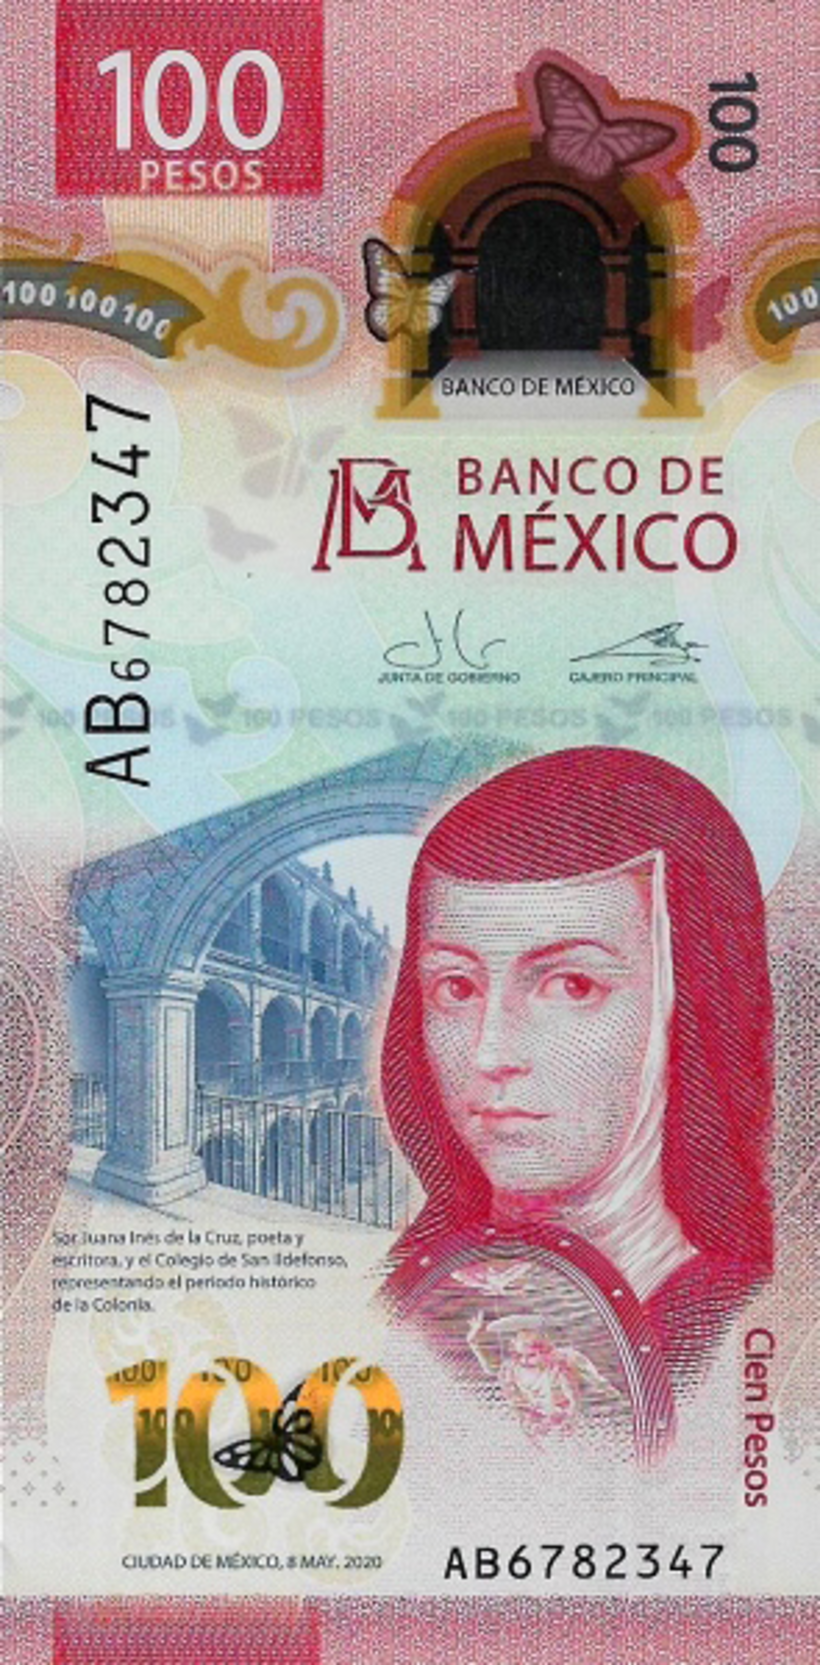 El billete de 100 pesos mexicanos premiado.